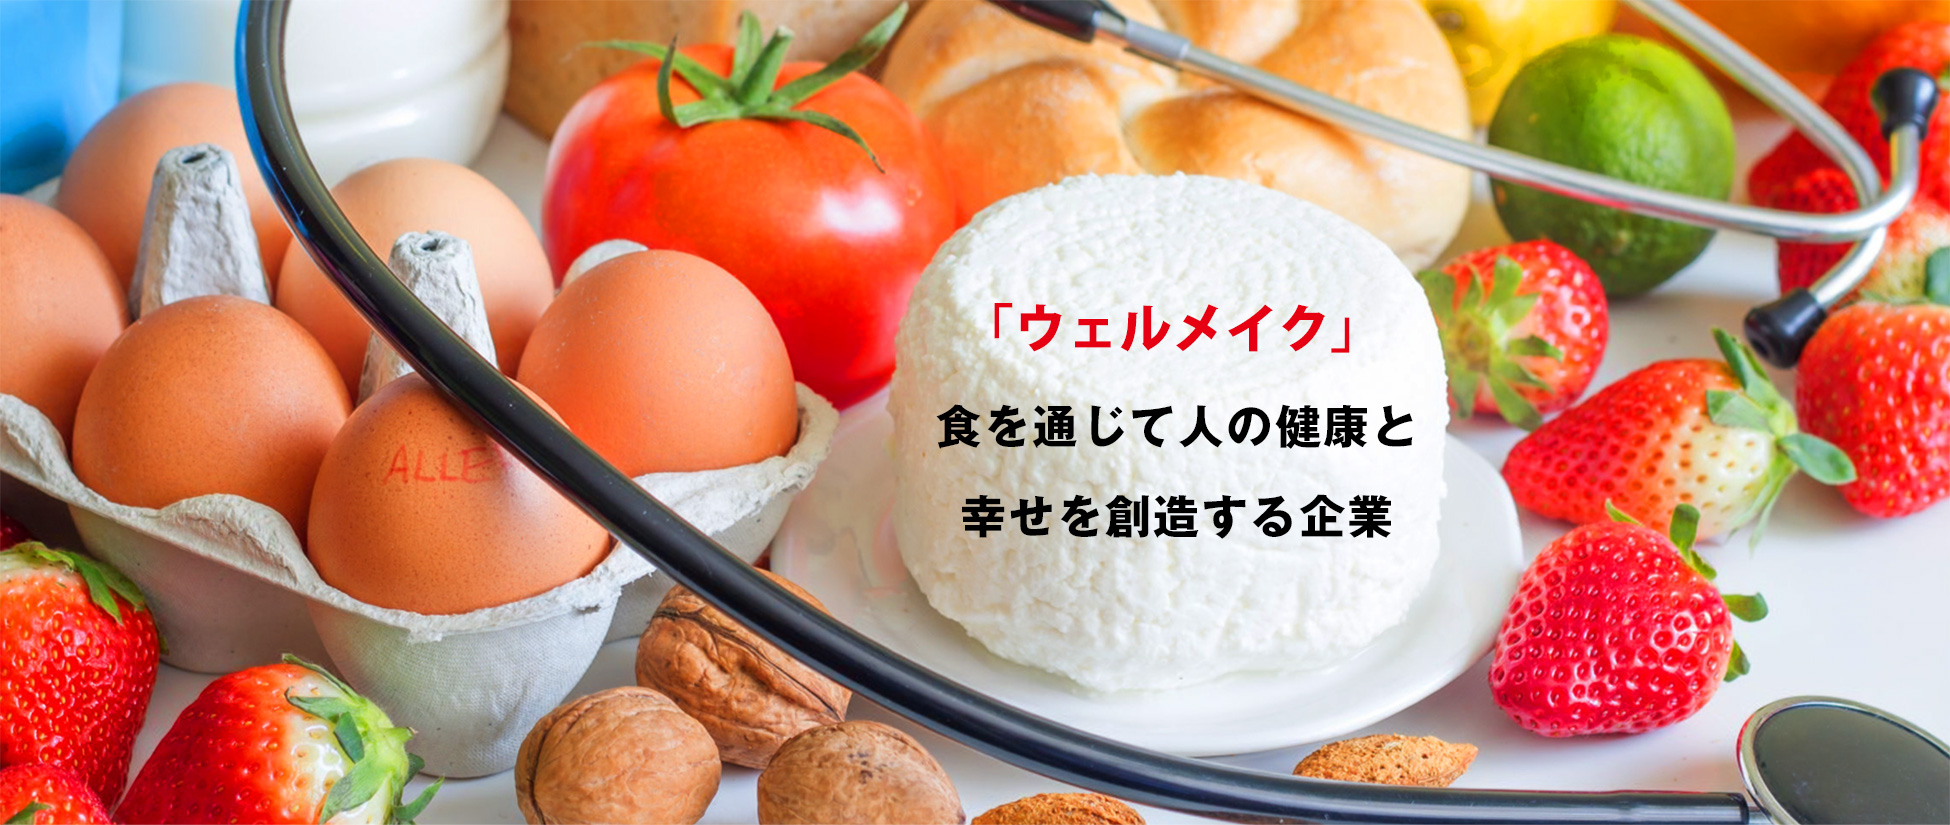 Food Technology食品添加物のプロフェッショナル赤田善におまかせください。